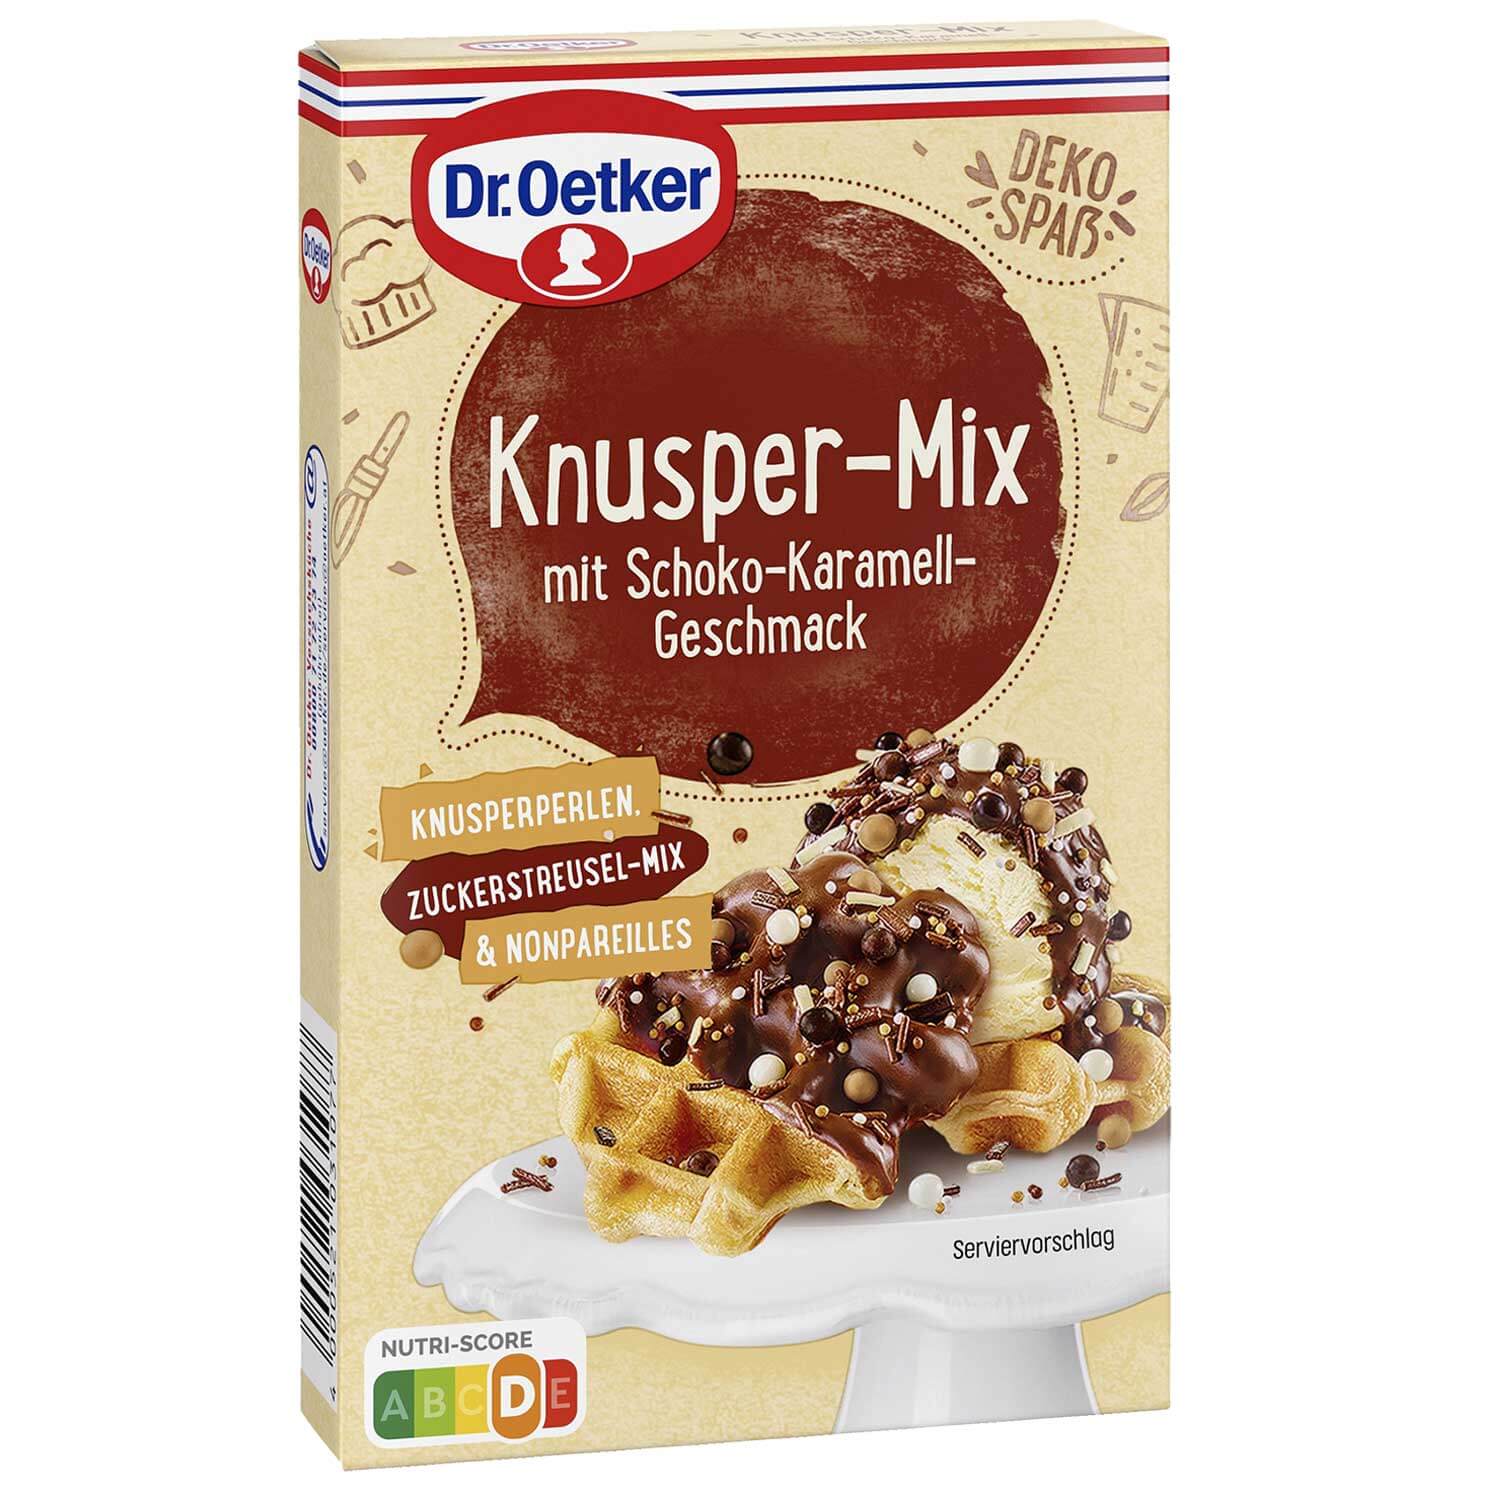 Knusper-Mix Schoko-Karamell-Geschmack